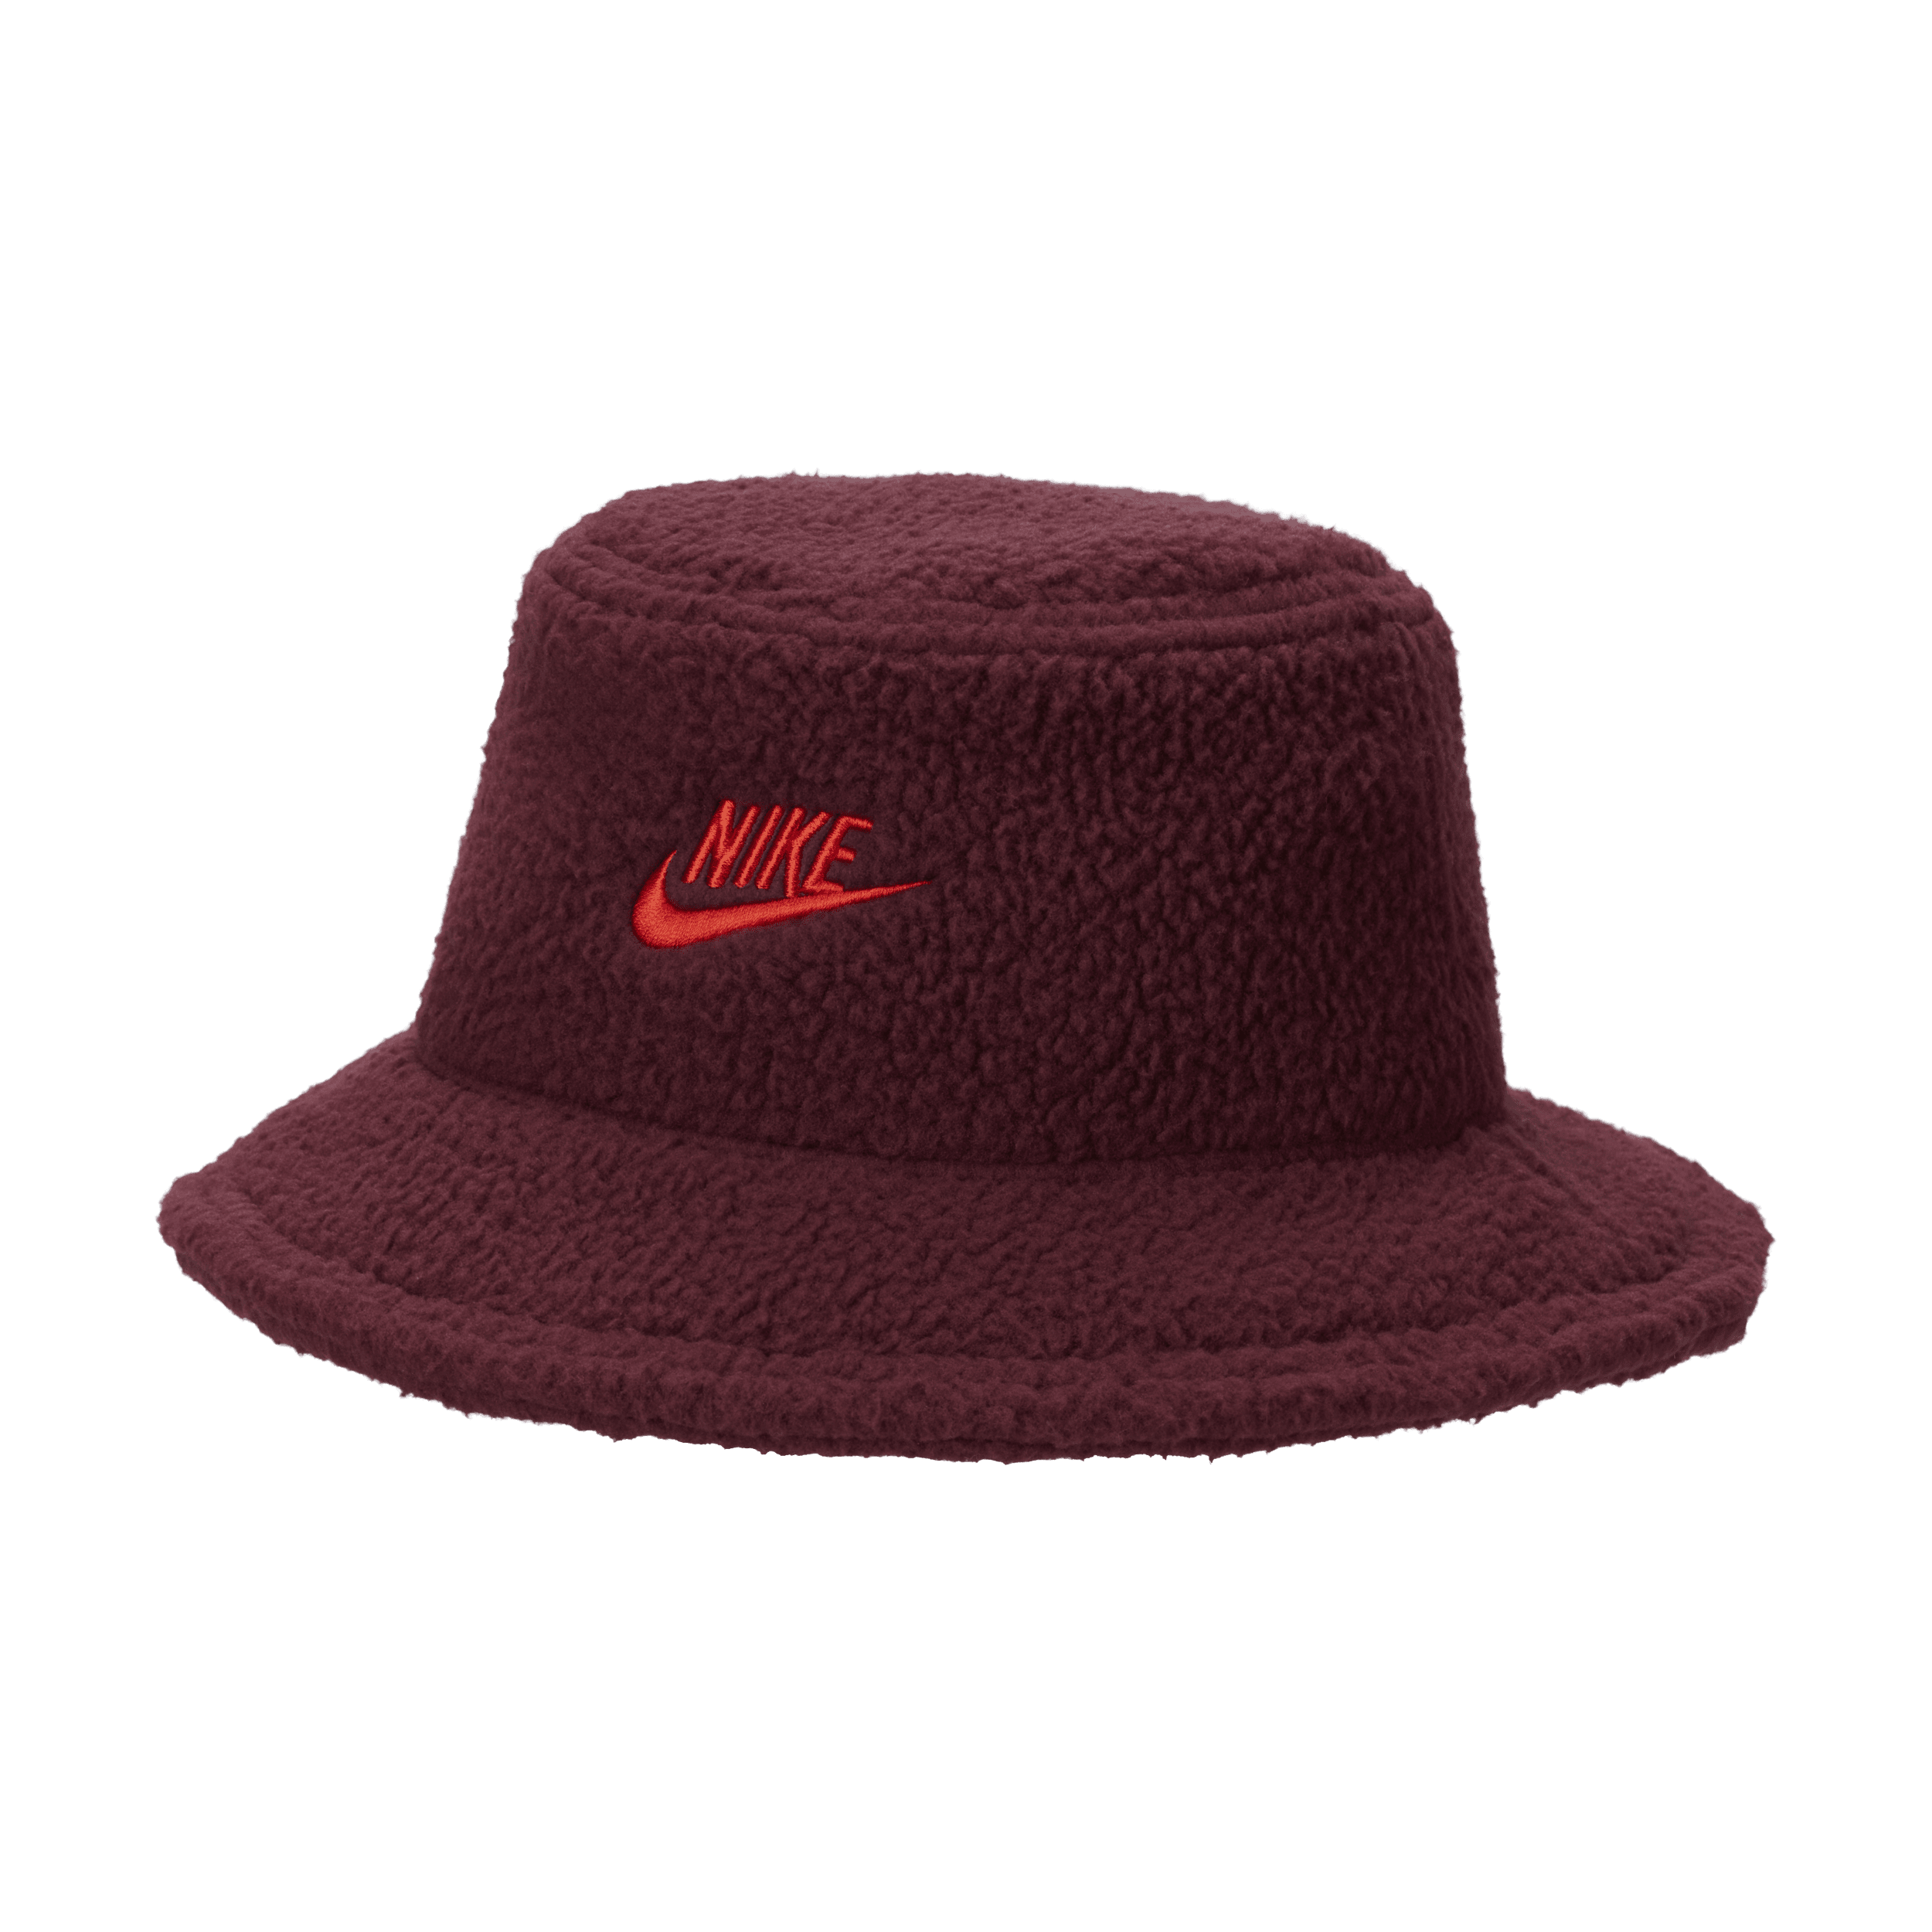 Nike Apex-bøllehat til børn - rød